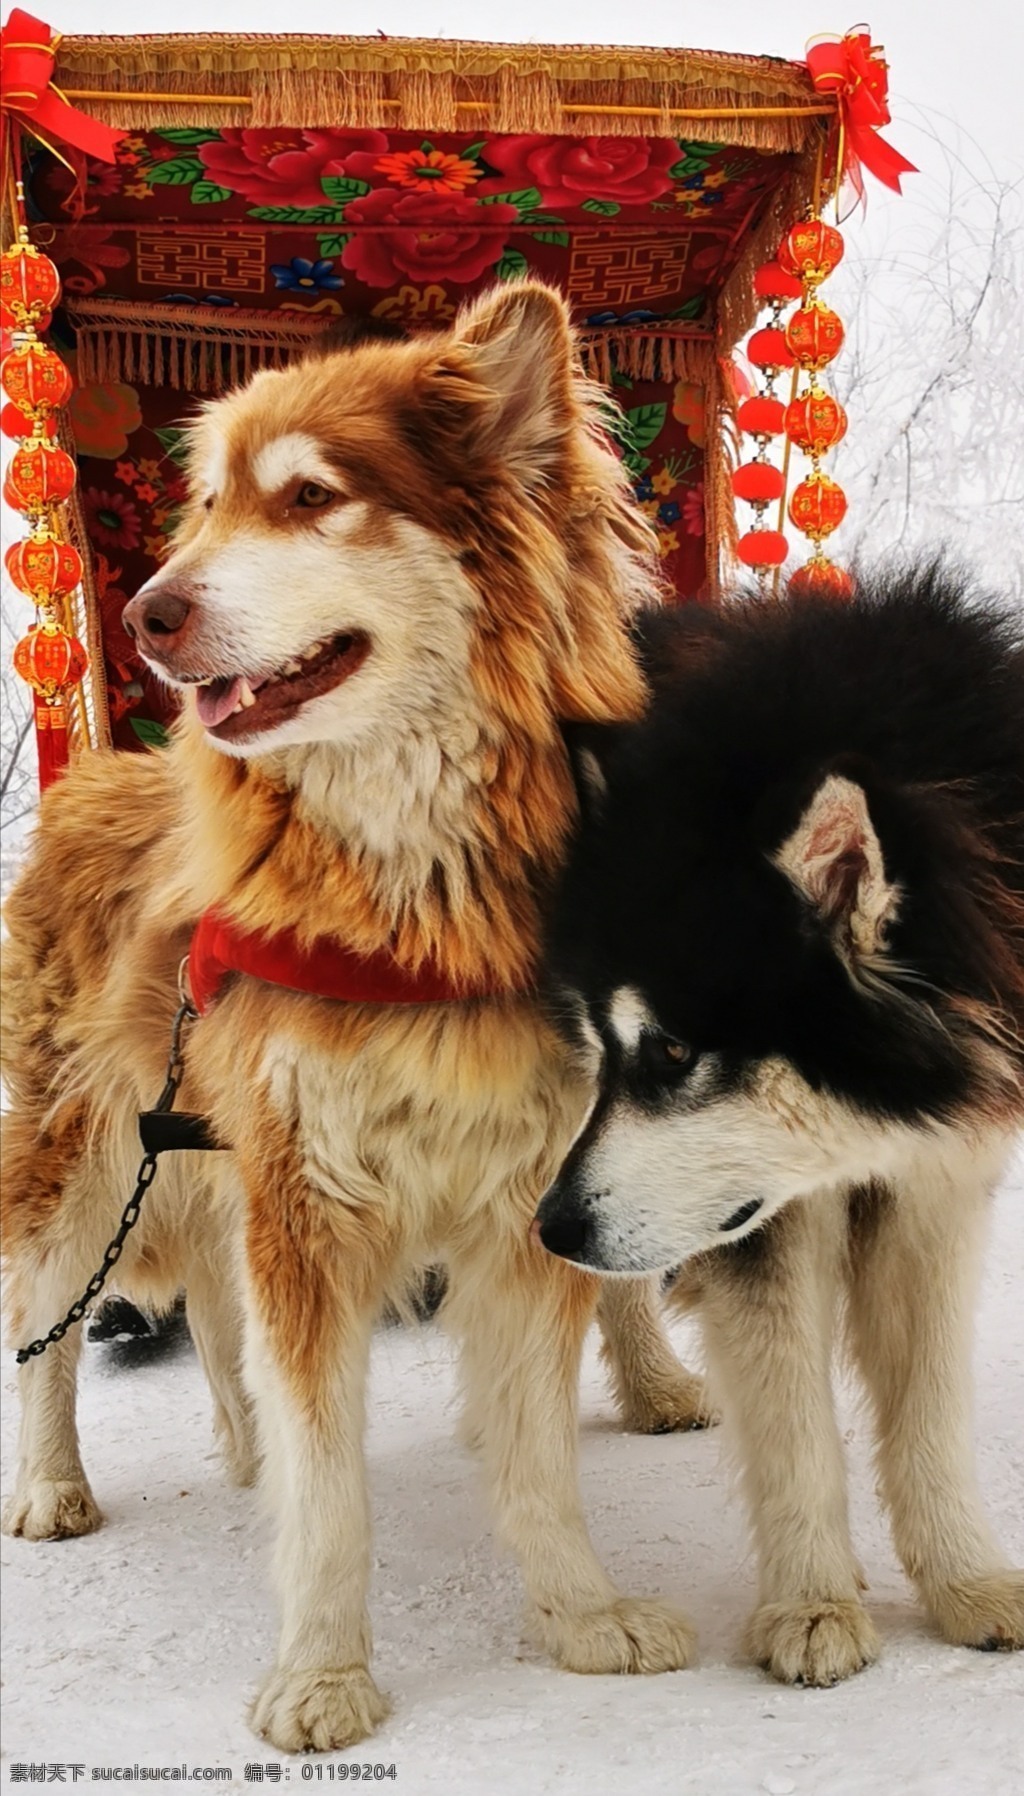 狗狗图片 宠物 狗 雪地 冬日 雪橇 旅游摄影 国内旅游